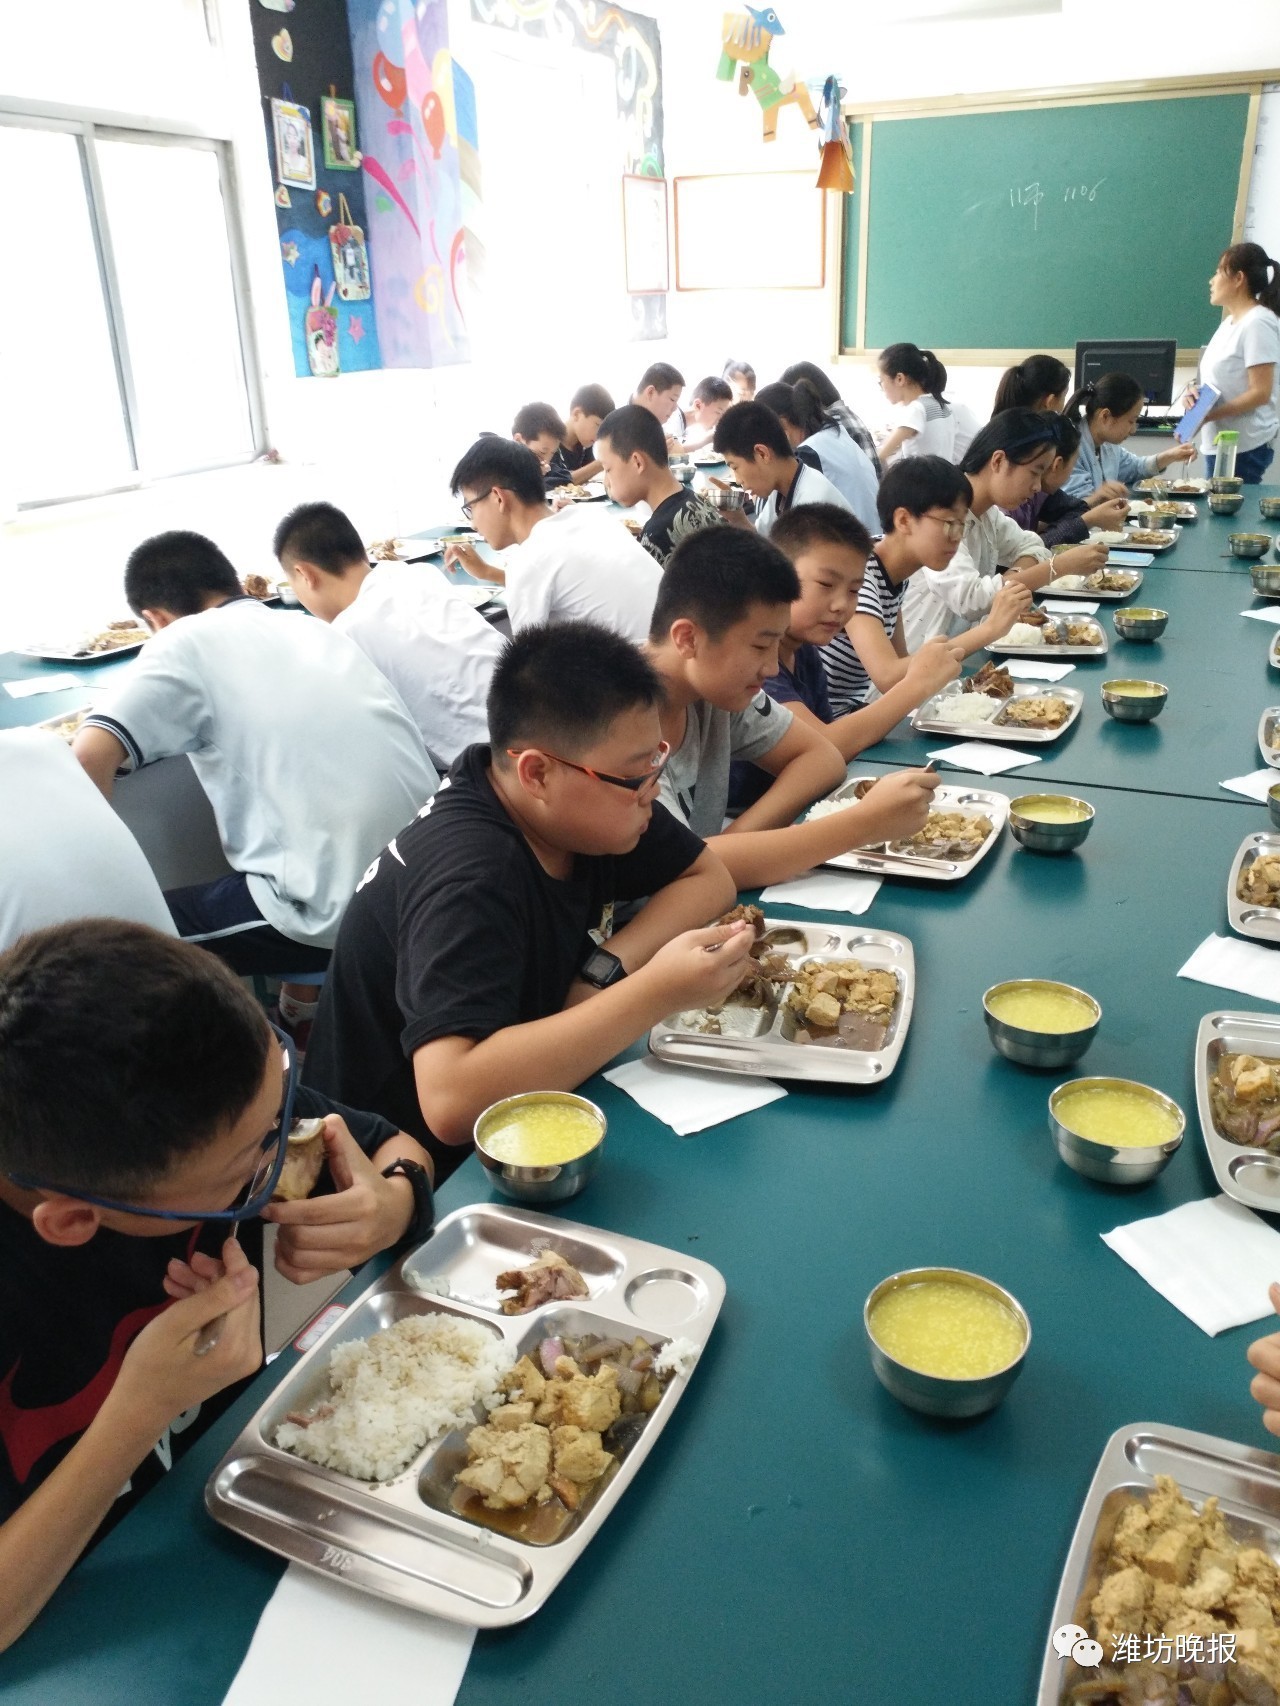 鄂尔多斯市第一中学伊金霍洛分校的学生在学校用午餐及午休_鄂尔多斯市人民政府